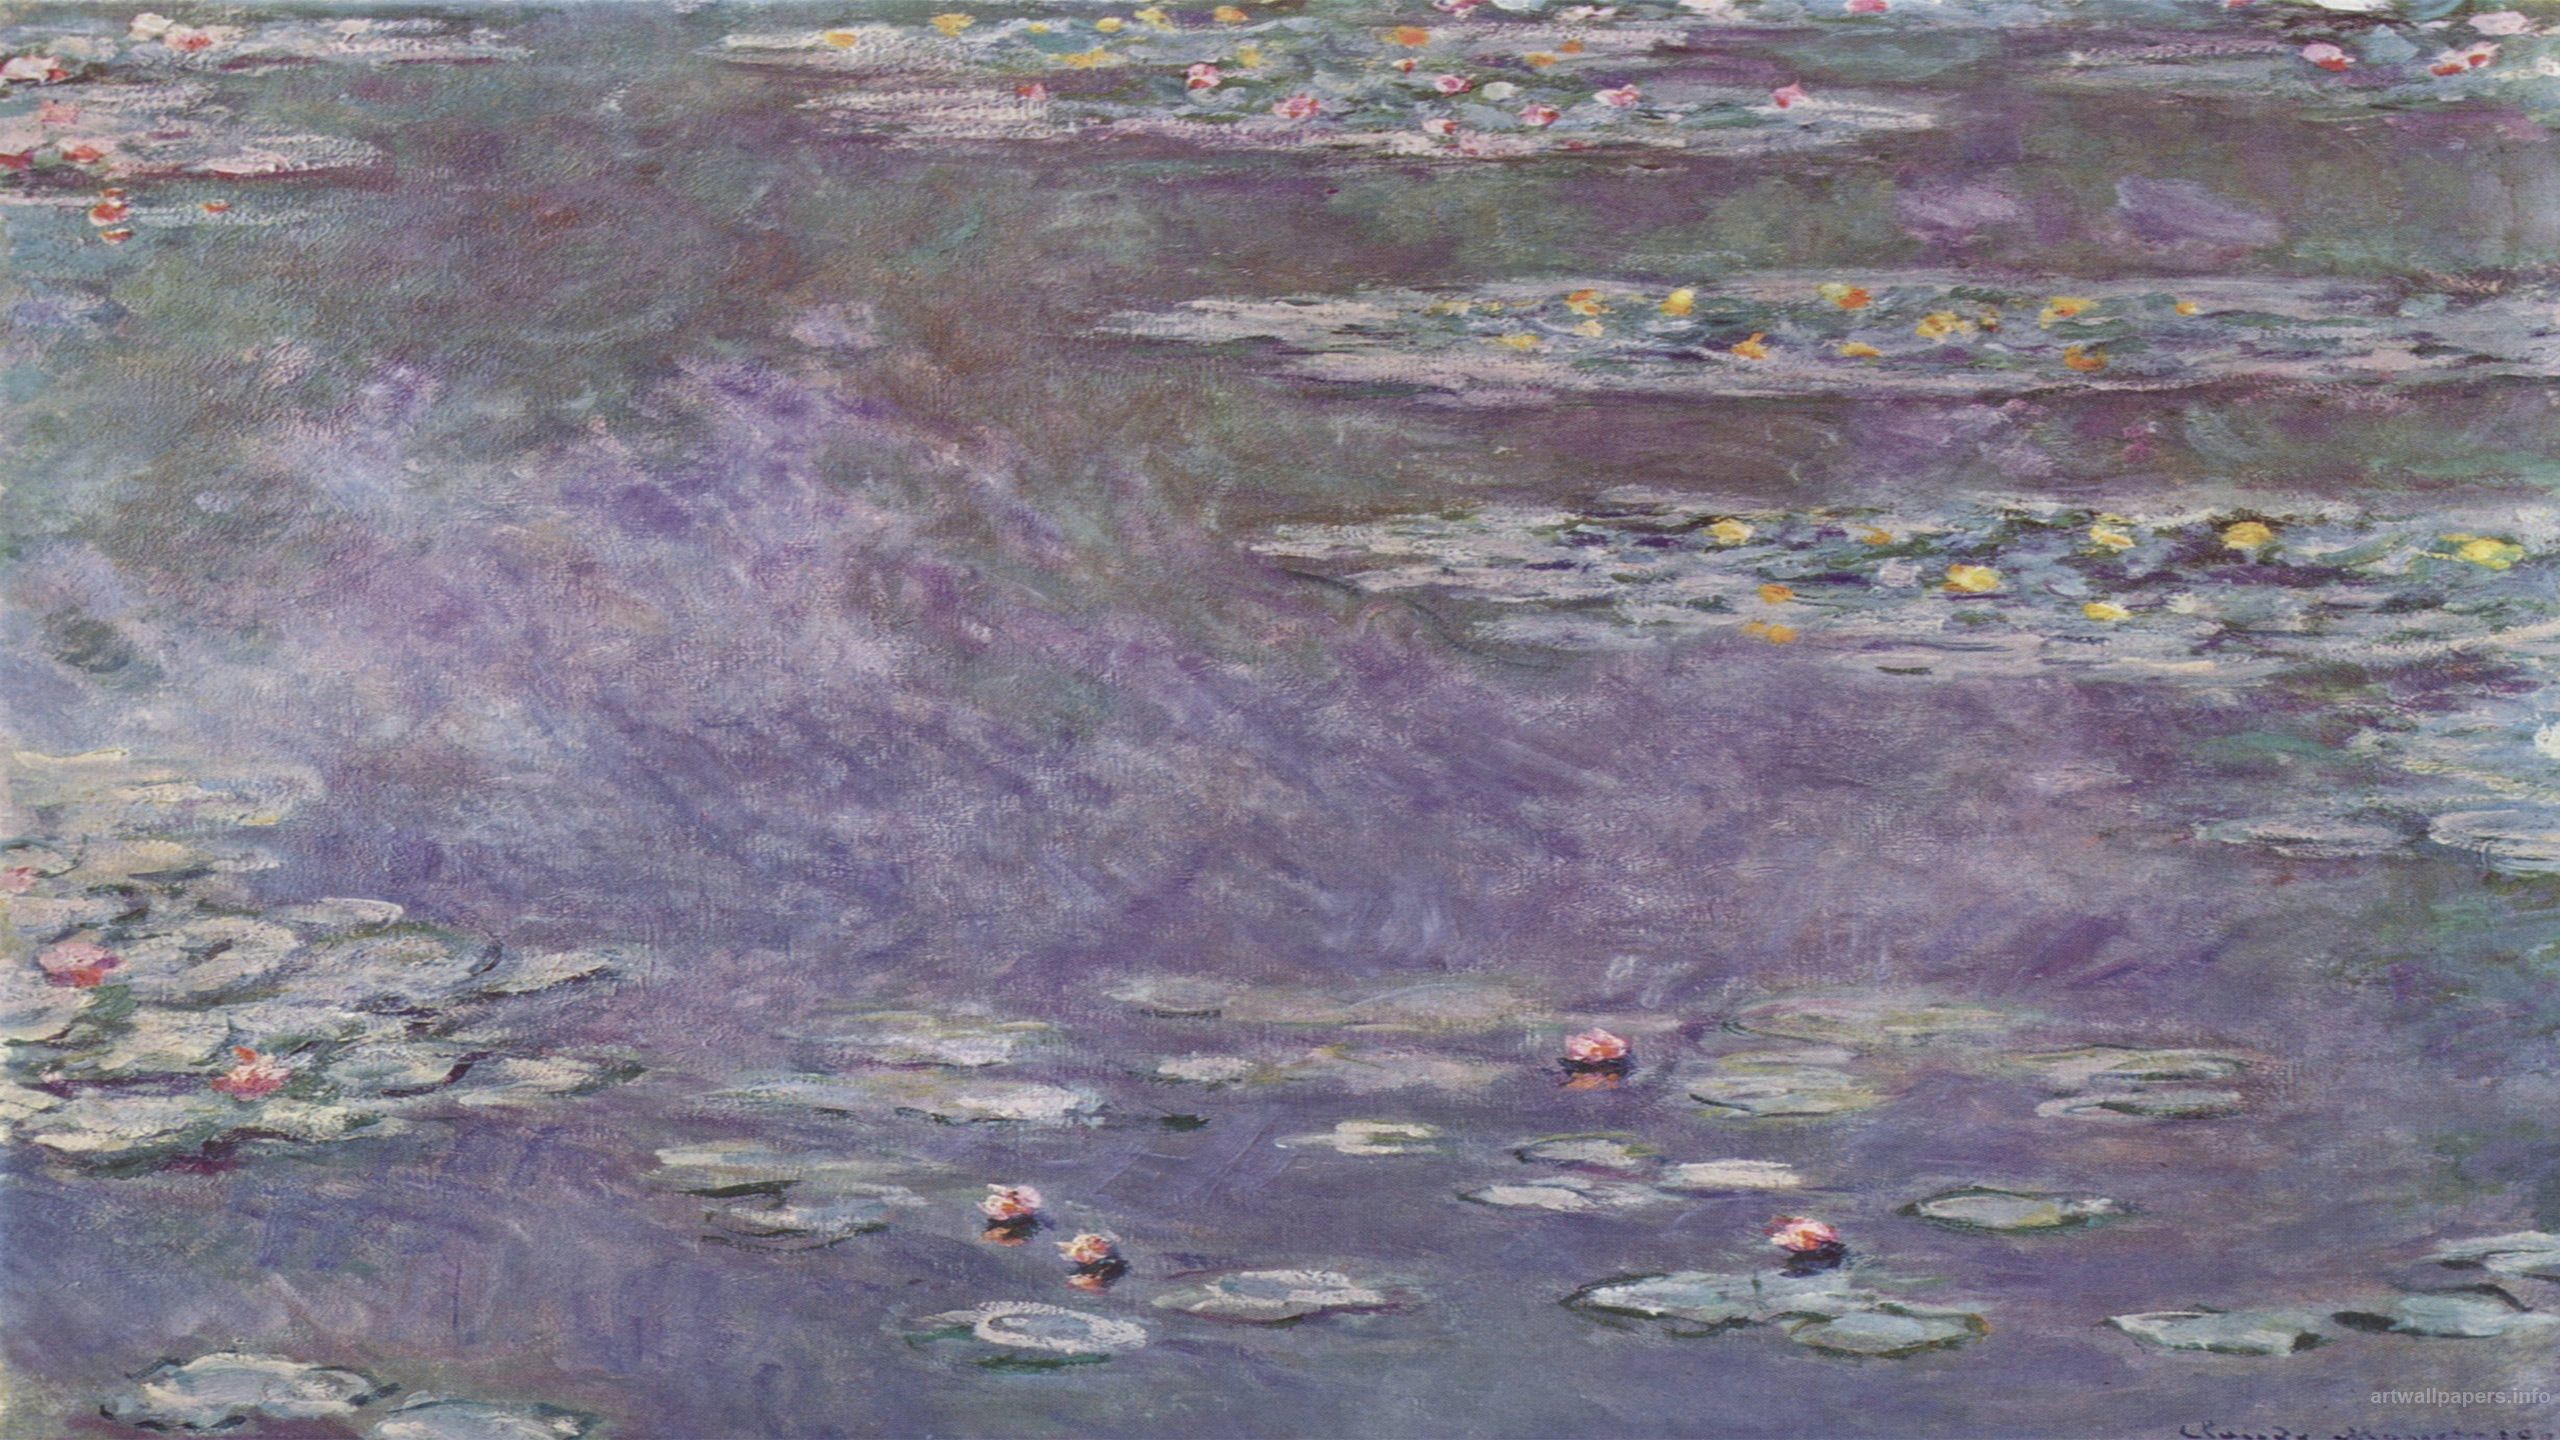 Wallpaper the sky trees landscape river picture Claude Monet images  for desktop section живопись  download